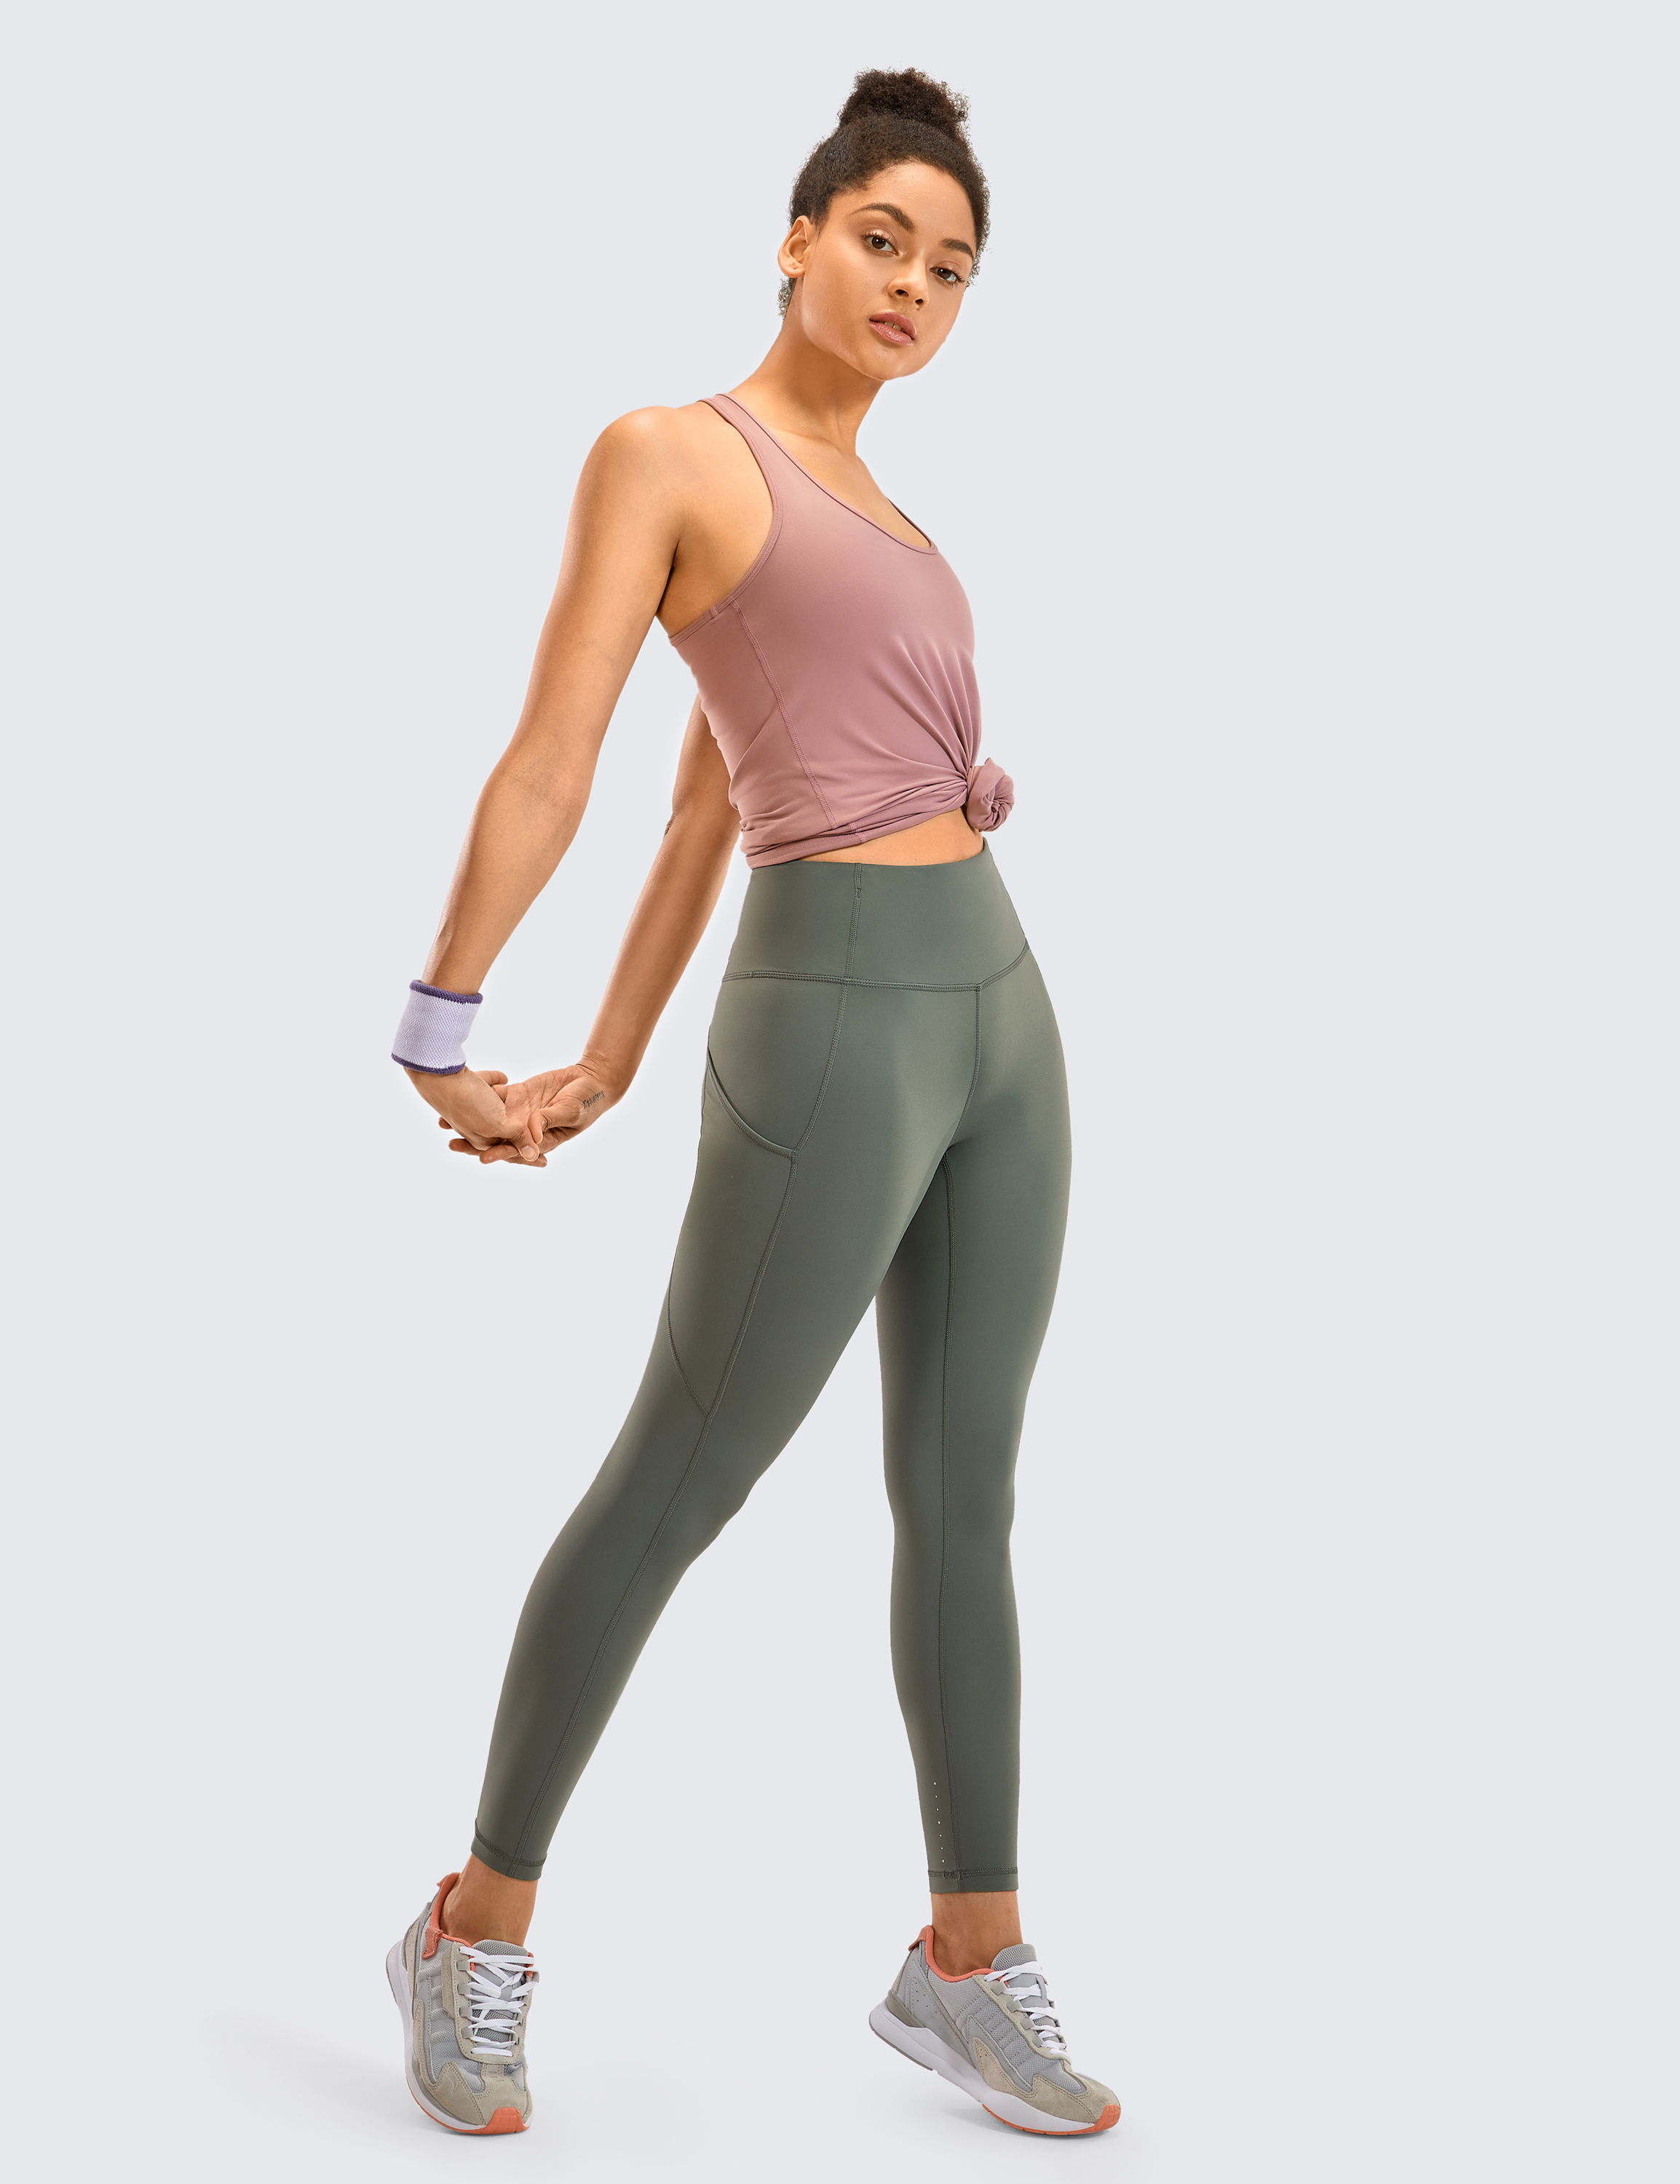 women's yoga pants and leggings